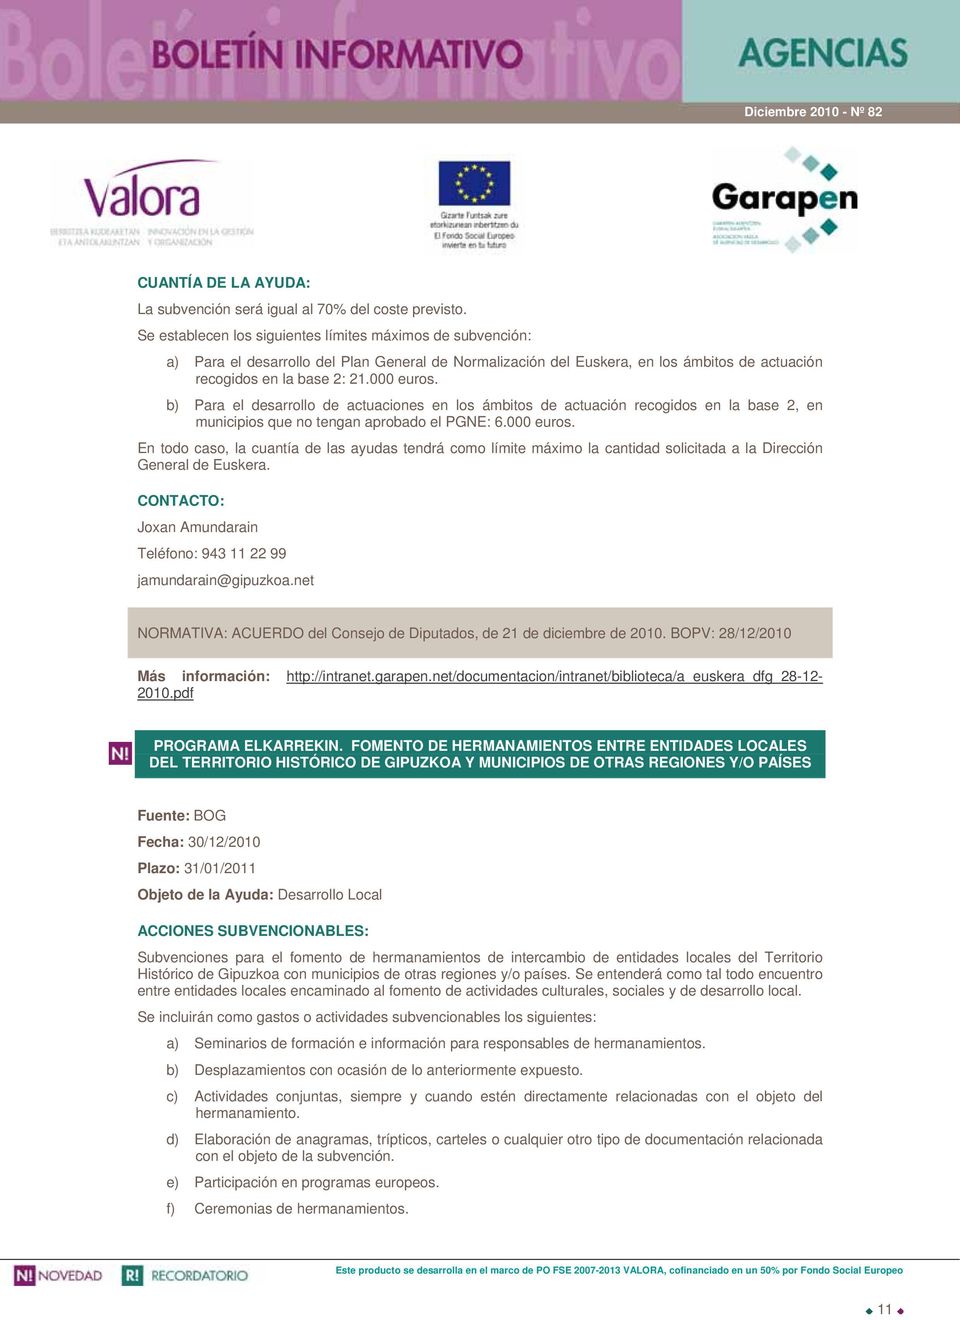 b) Para el desarrollo de actuaciones en los ámbitos de actuación recogidos en la base 2, en municipios que no tengan aprobado el PGNE: 6.000 euros.